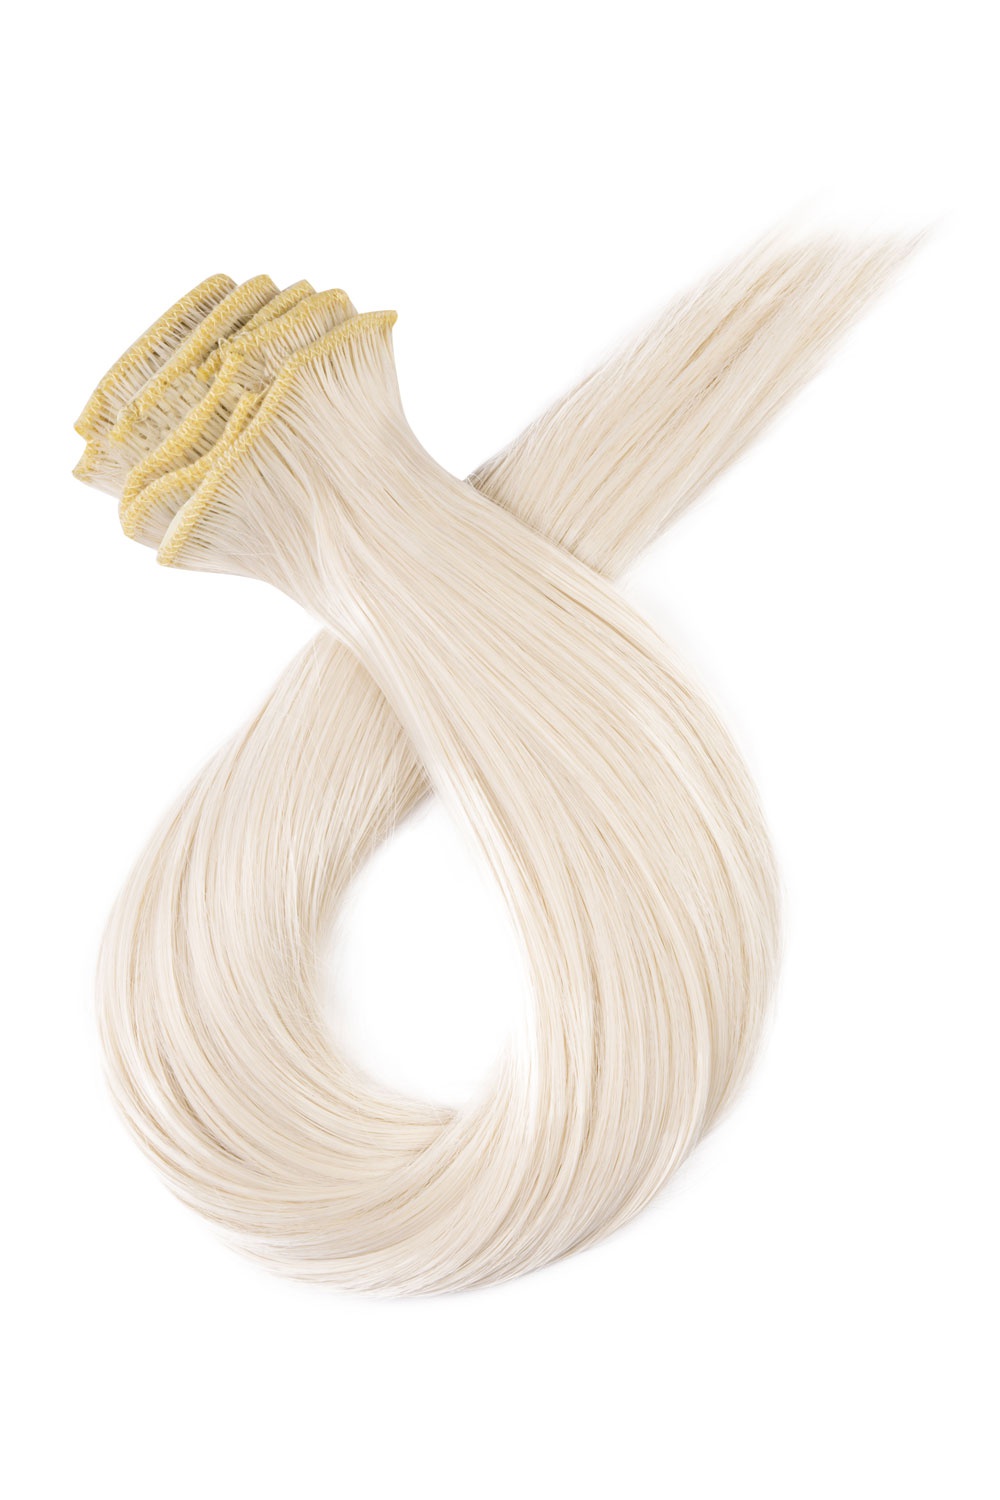 Platinové blond clip in vlasy, 70cm, 180g, farba 60